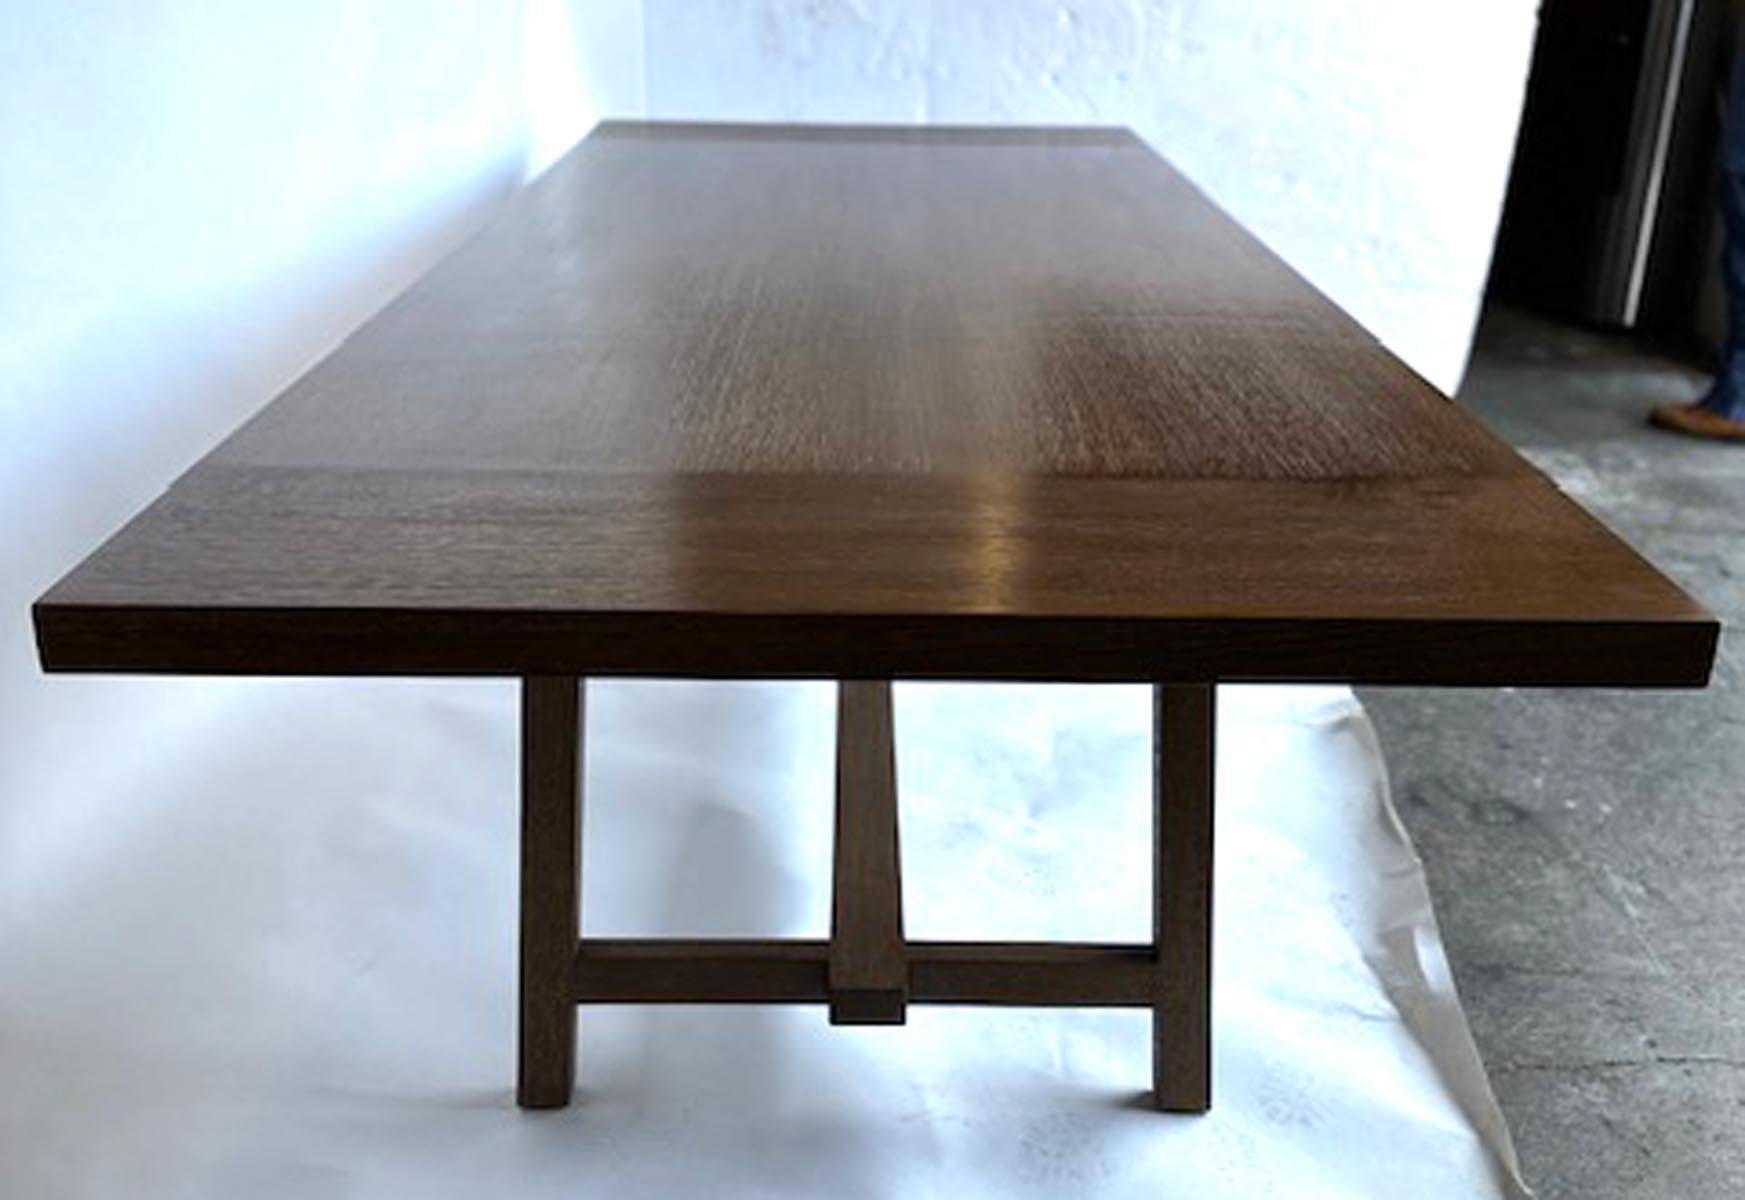 Individueller V-Tisch von Dos Gallos Studio in Eiche Cerused Rift. Dieser Tisch kann in jeder Größe und Ausführung hergestellt werden. Diese besondere Tabelle wurde aus massivem  Eiche Rift mit 12-Zoll-Brettern und einer zwei Zoll dicken